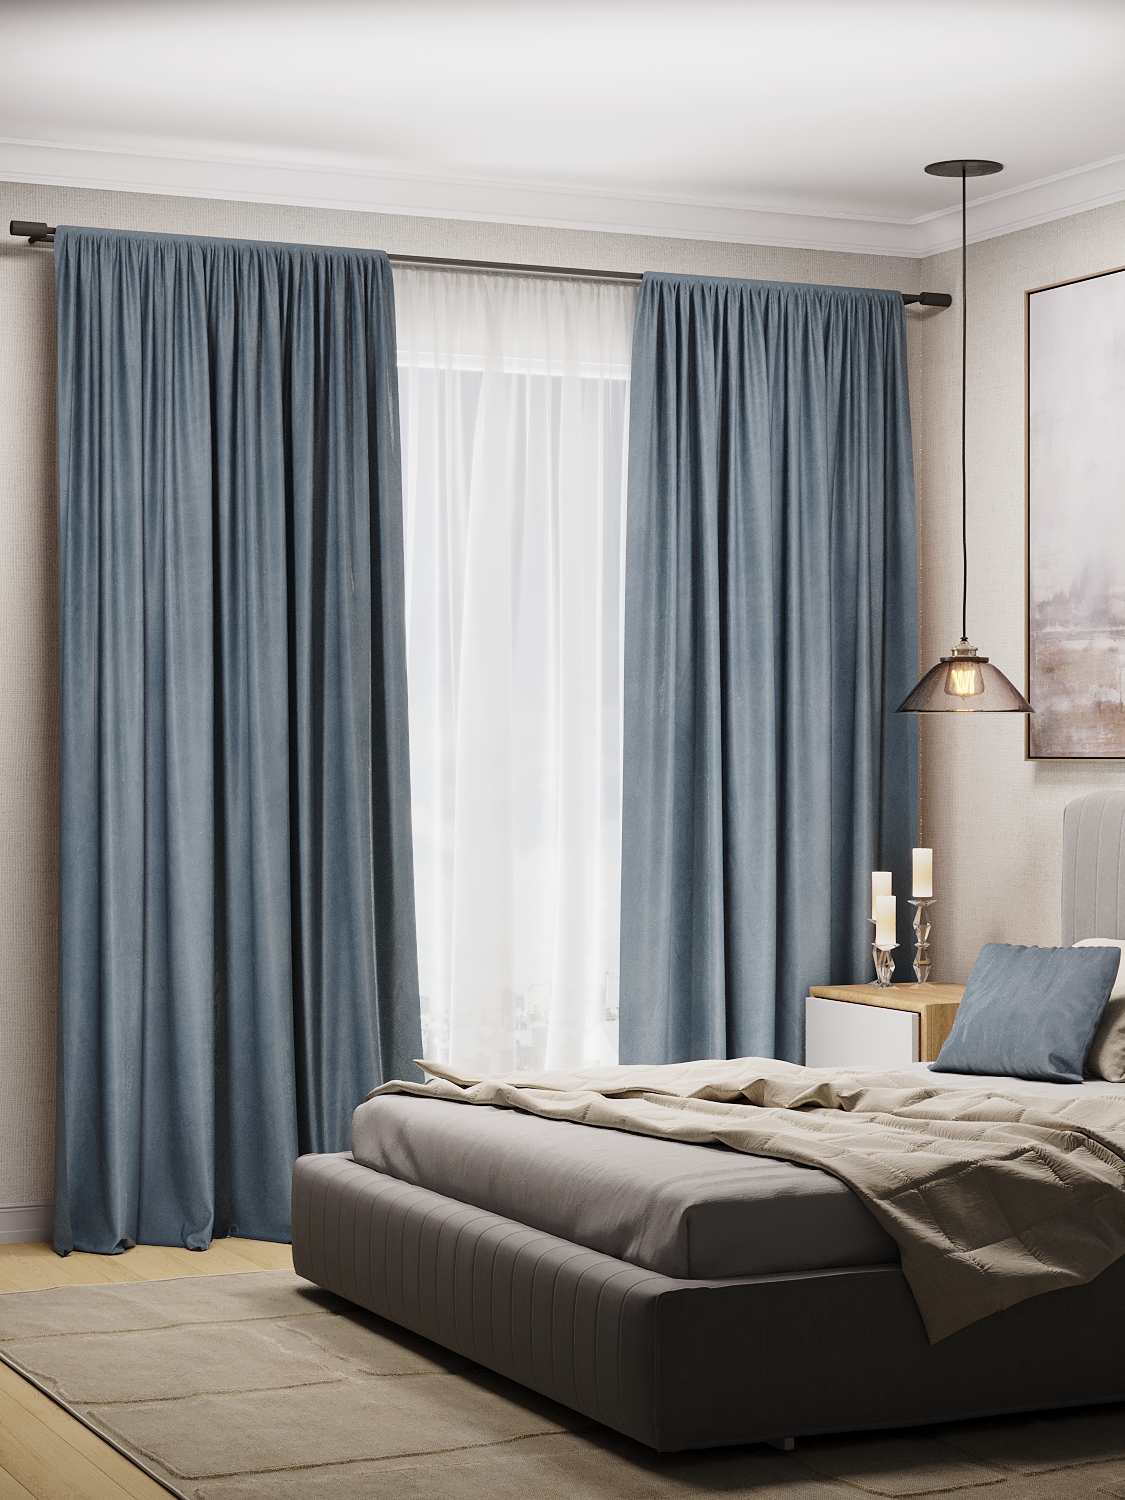 Комплект штор бархат для гостиной и спальни Sophia шторы голубые 2 шт по 200 на 280см